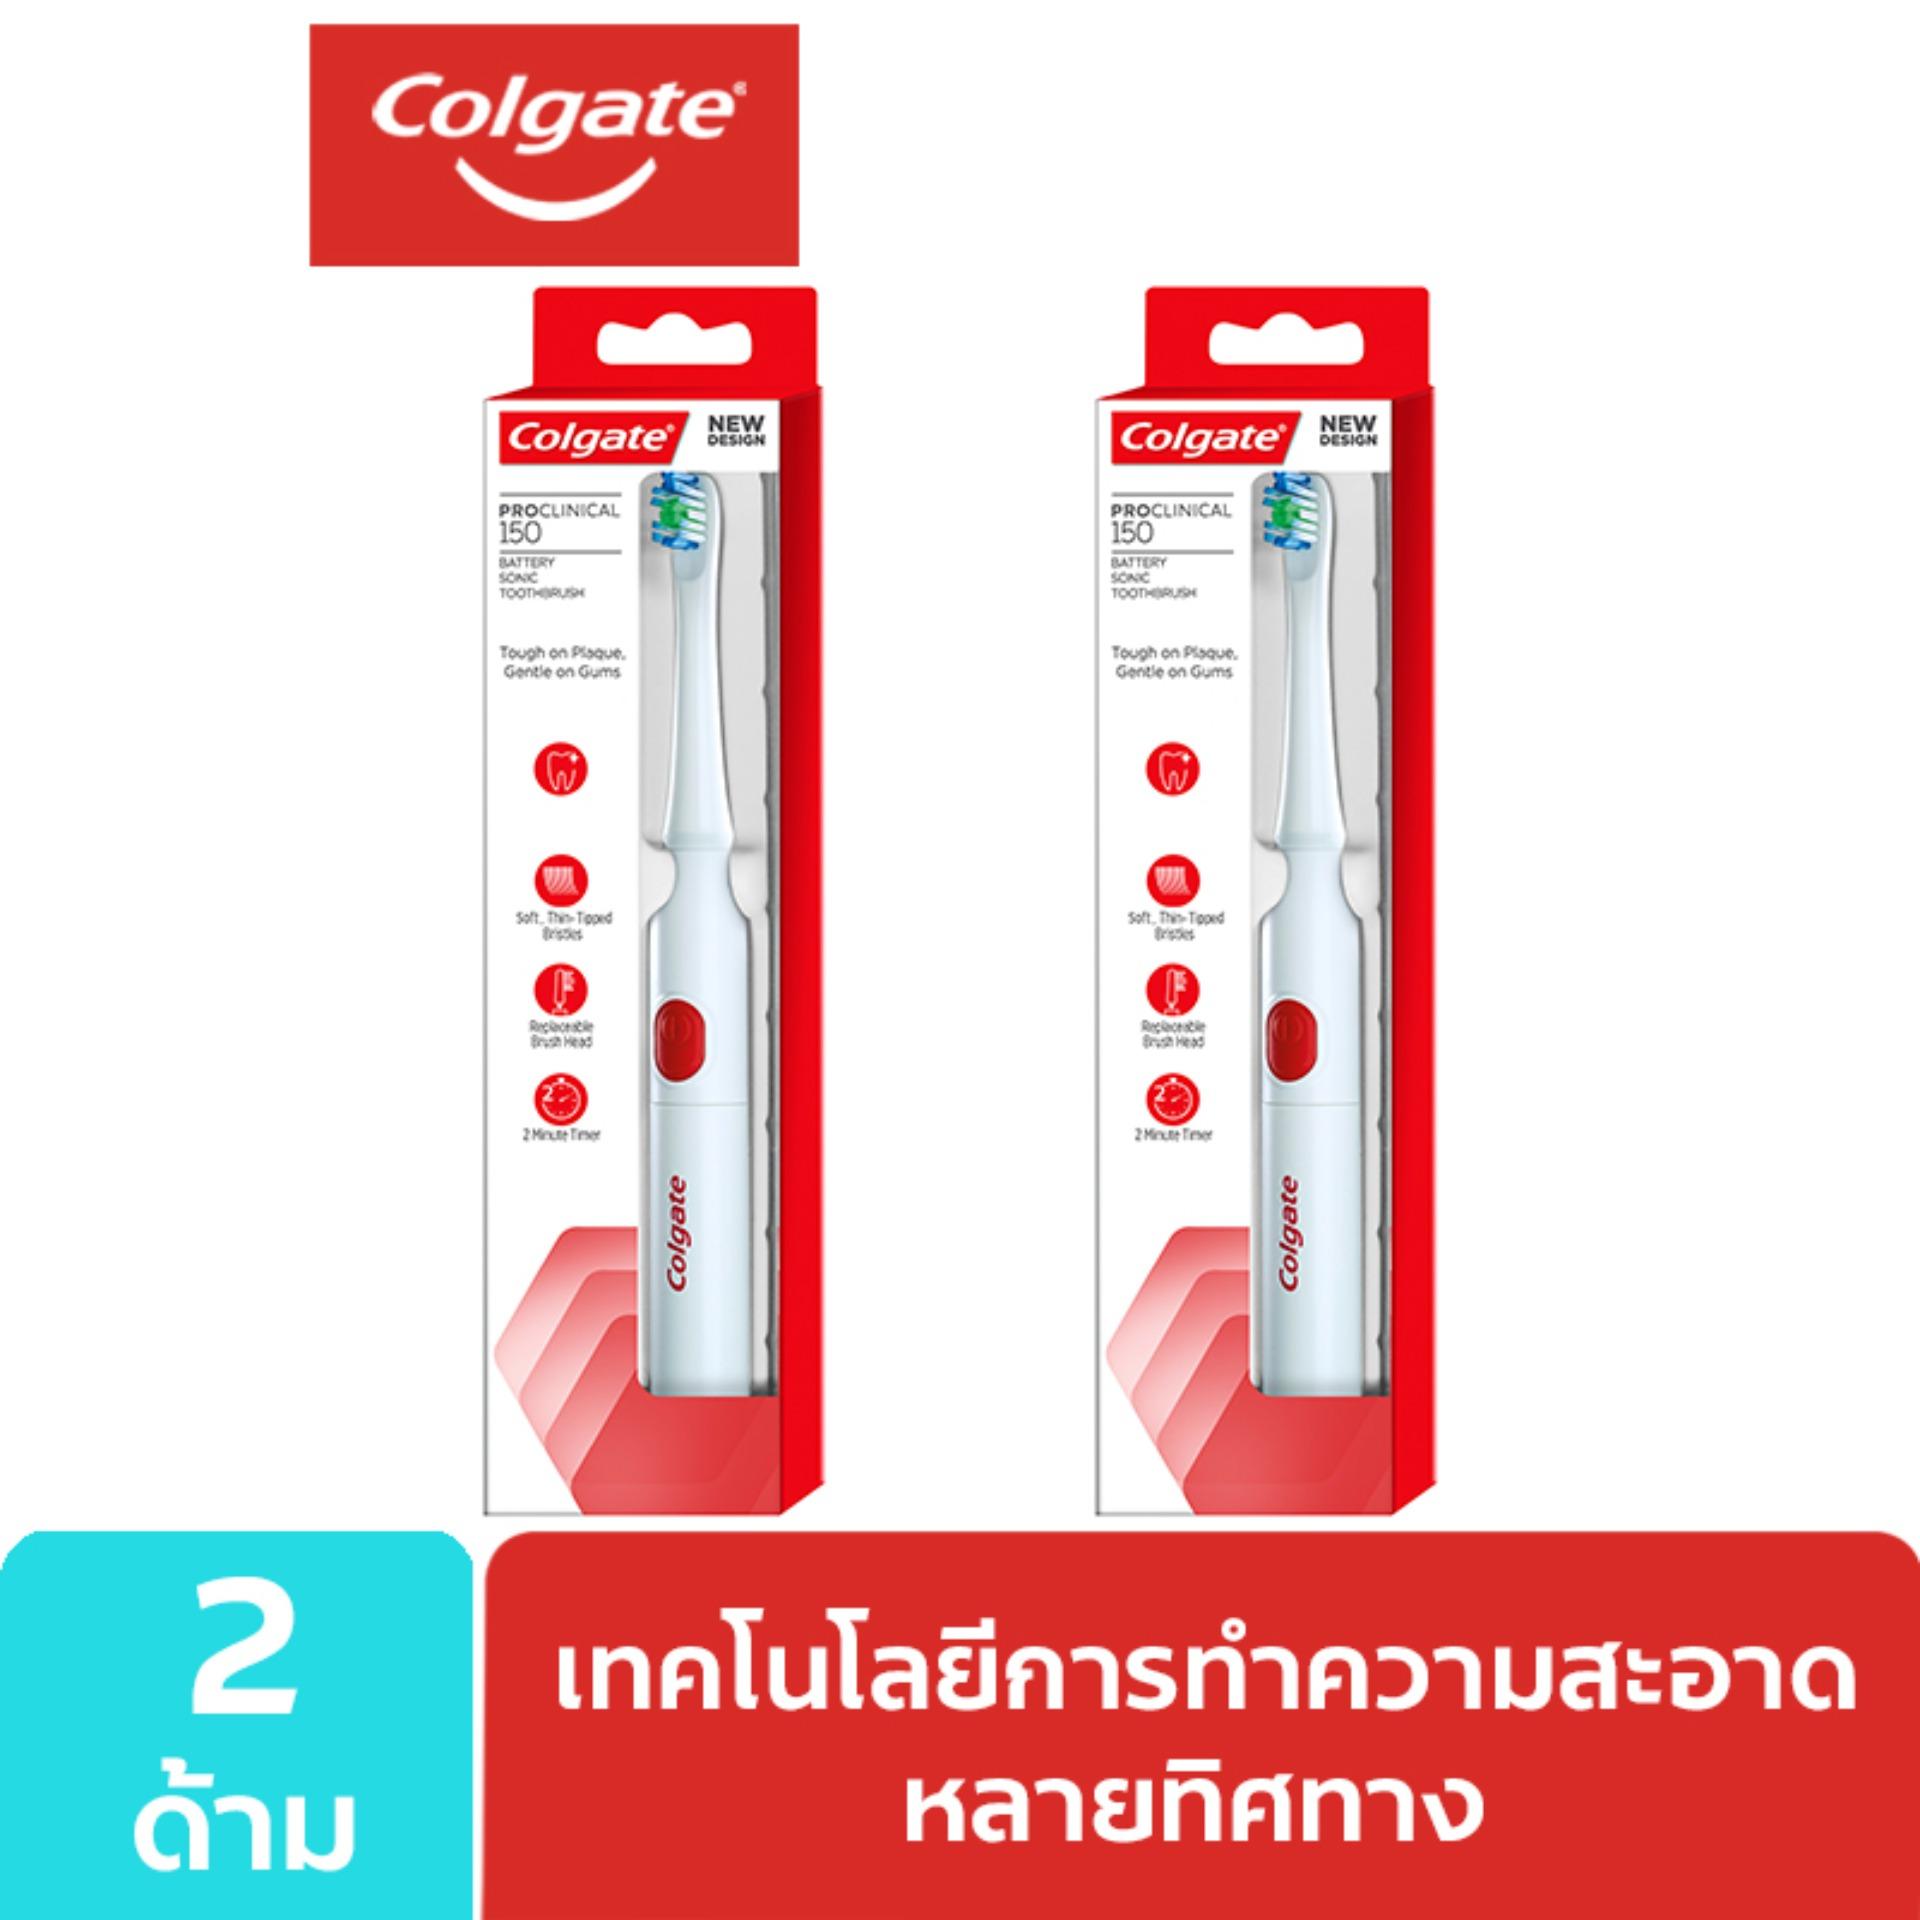  พระนครศรีอยุธยา แปรงสีฟันไฟฟ้า คอลเกต โปรคลินิคอล 150 แพ็ค 1 x 2  Colgate ProClinical 150 Powered Toothbrush Pack 1 x 2